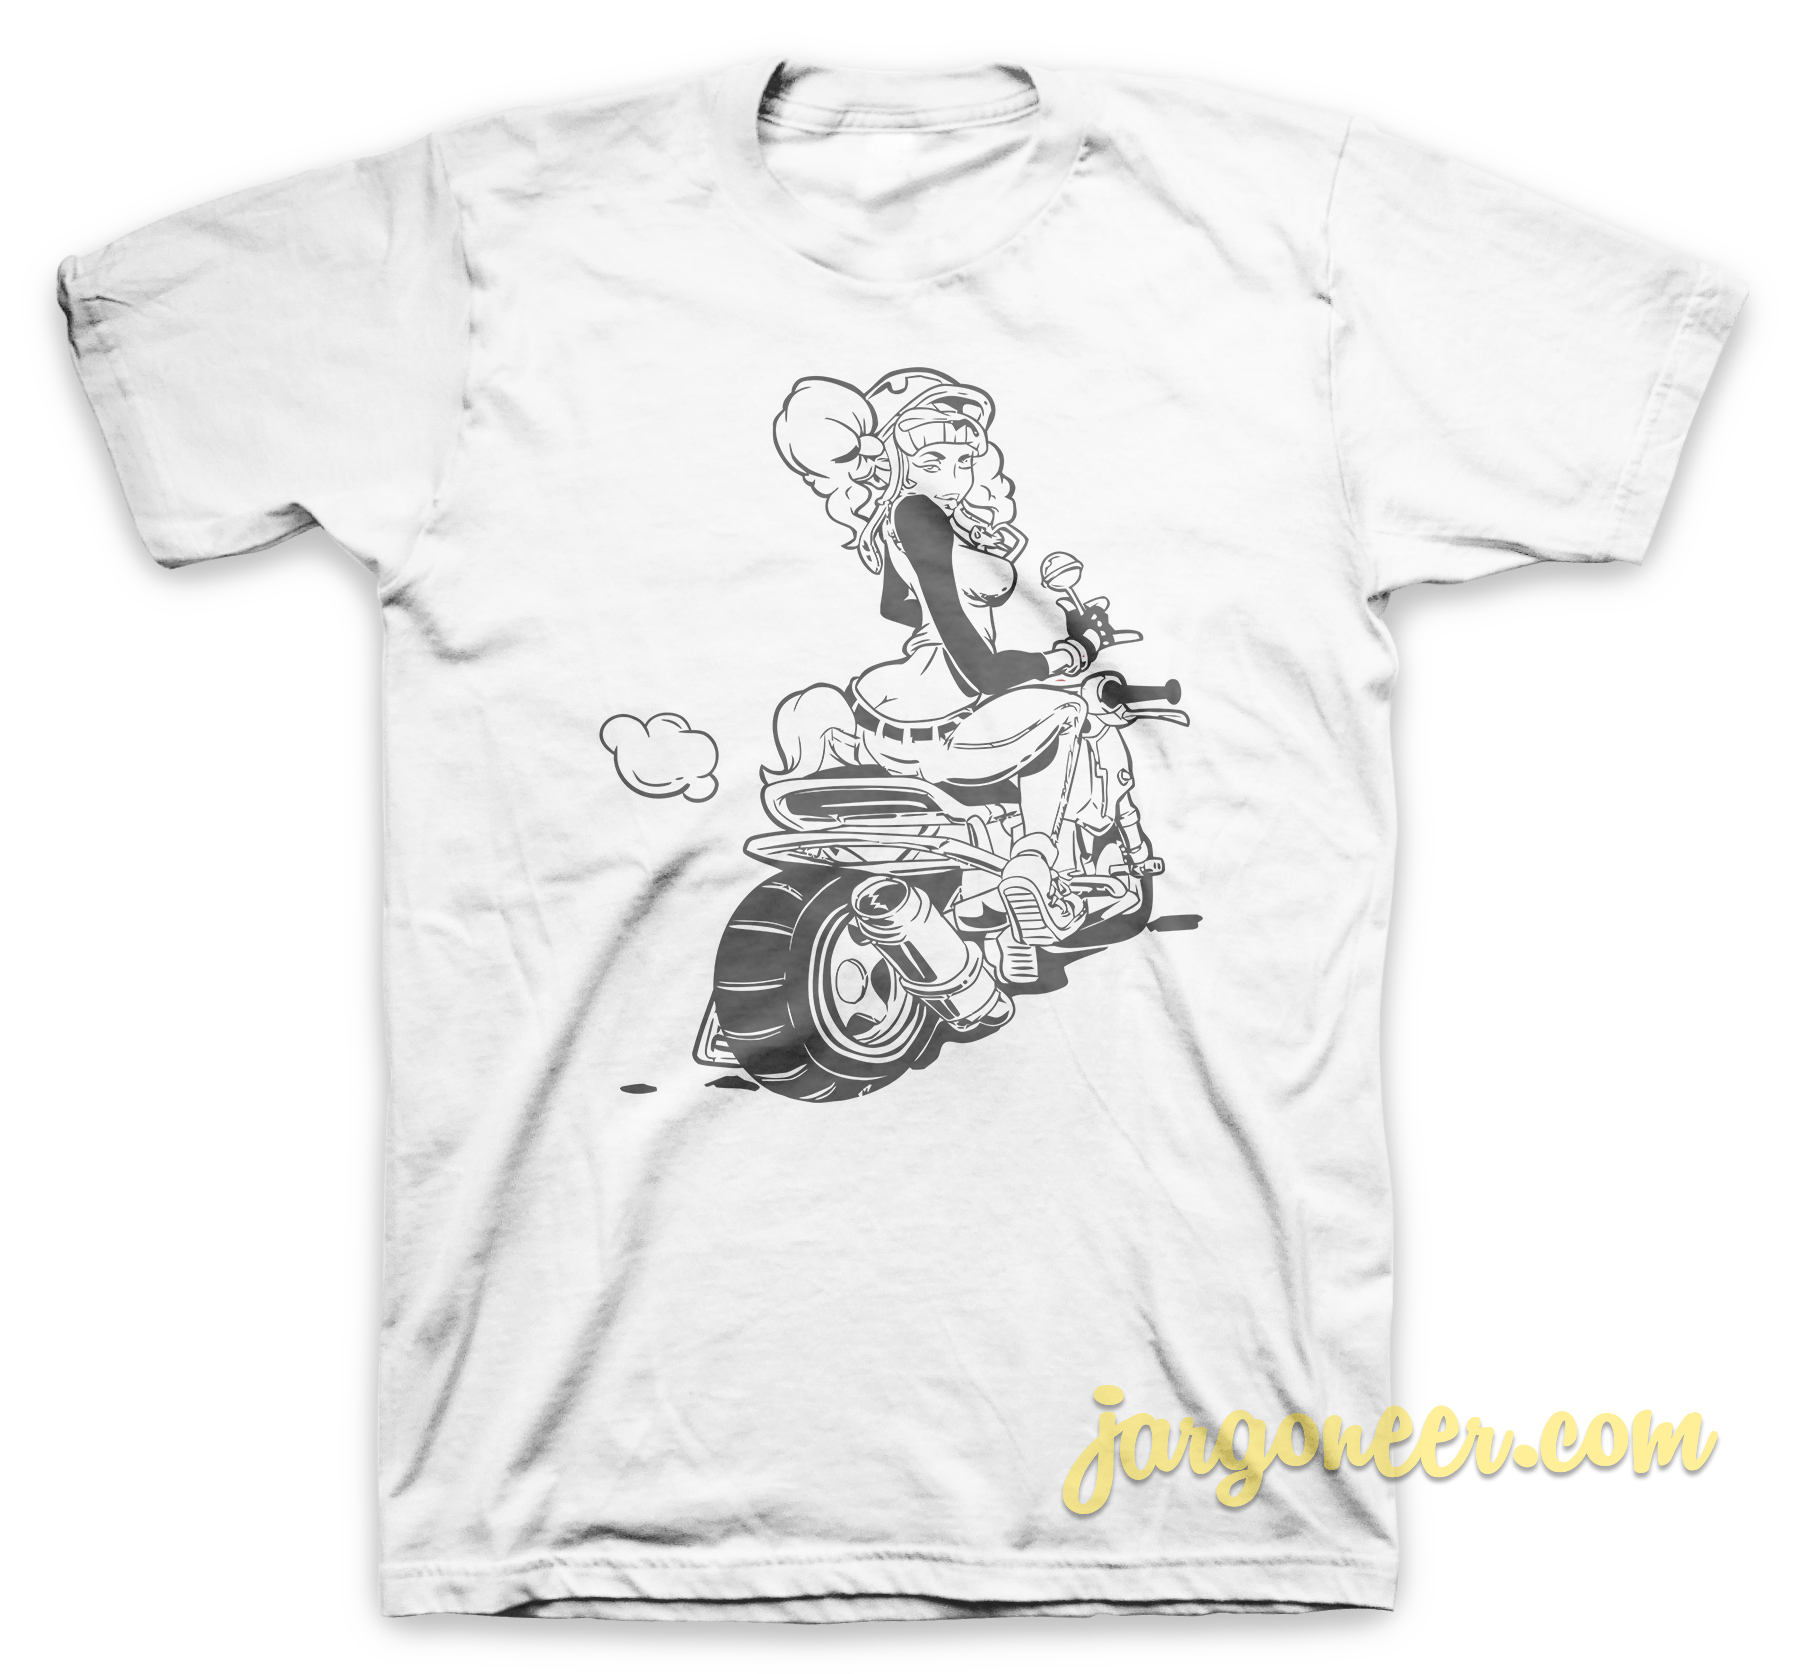 Lollypop Girl White T Shirt - Shop Unique Graphic Cool Shirt Designs